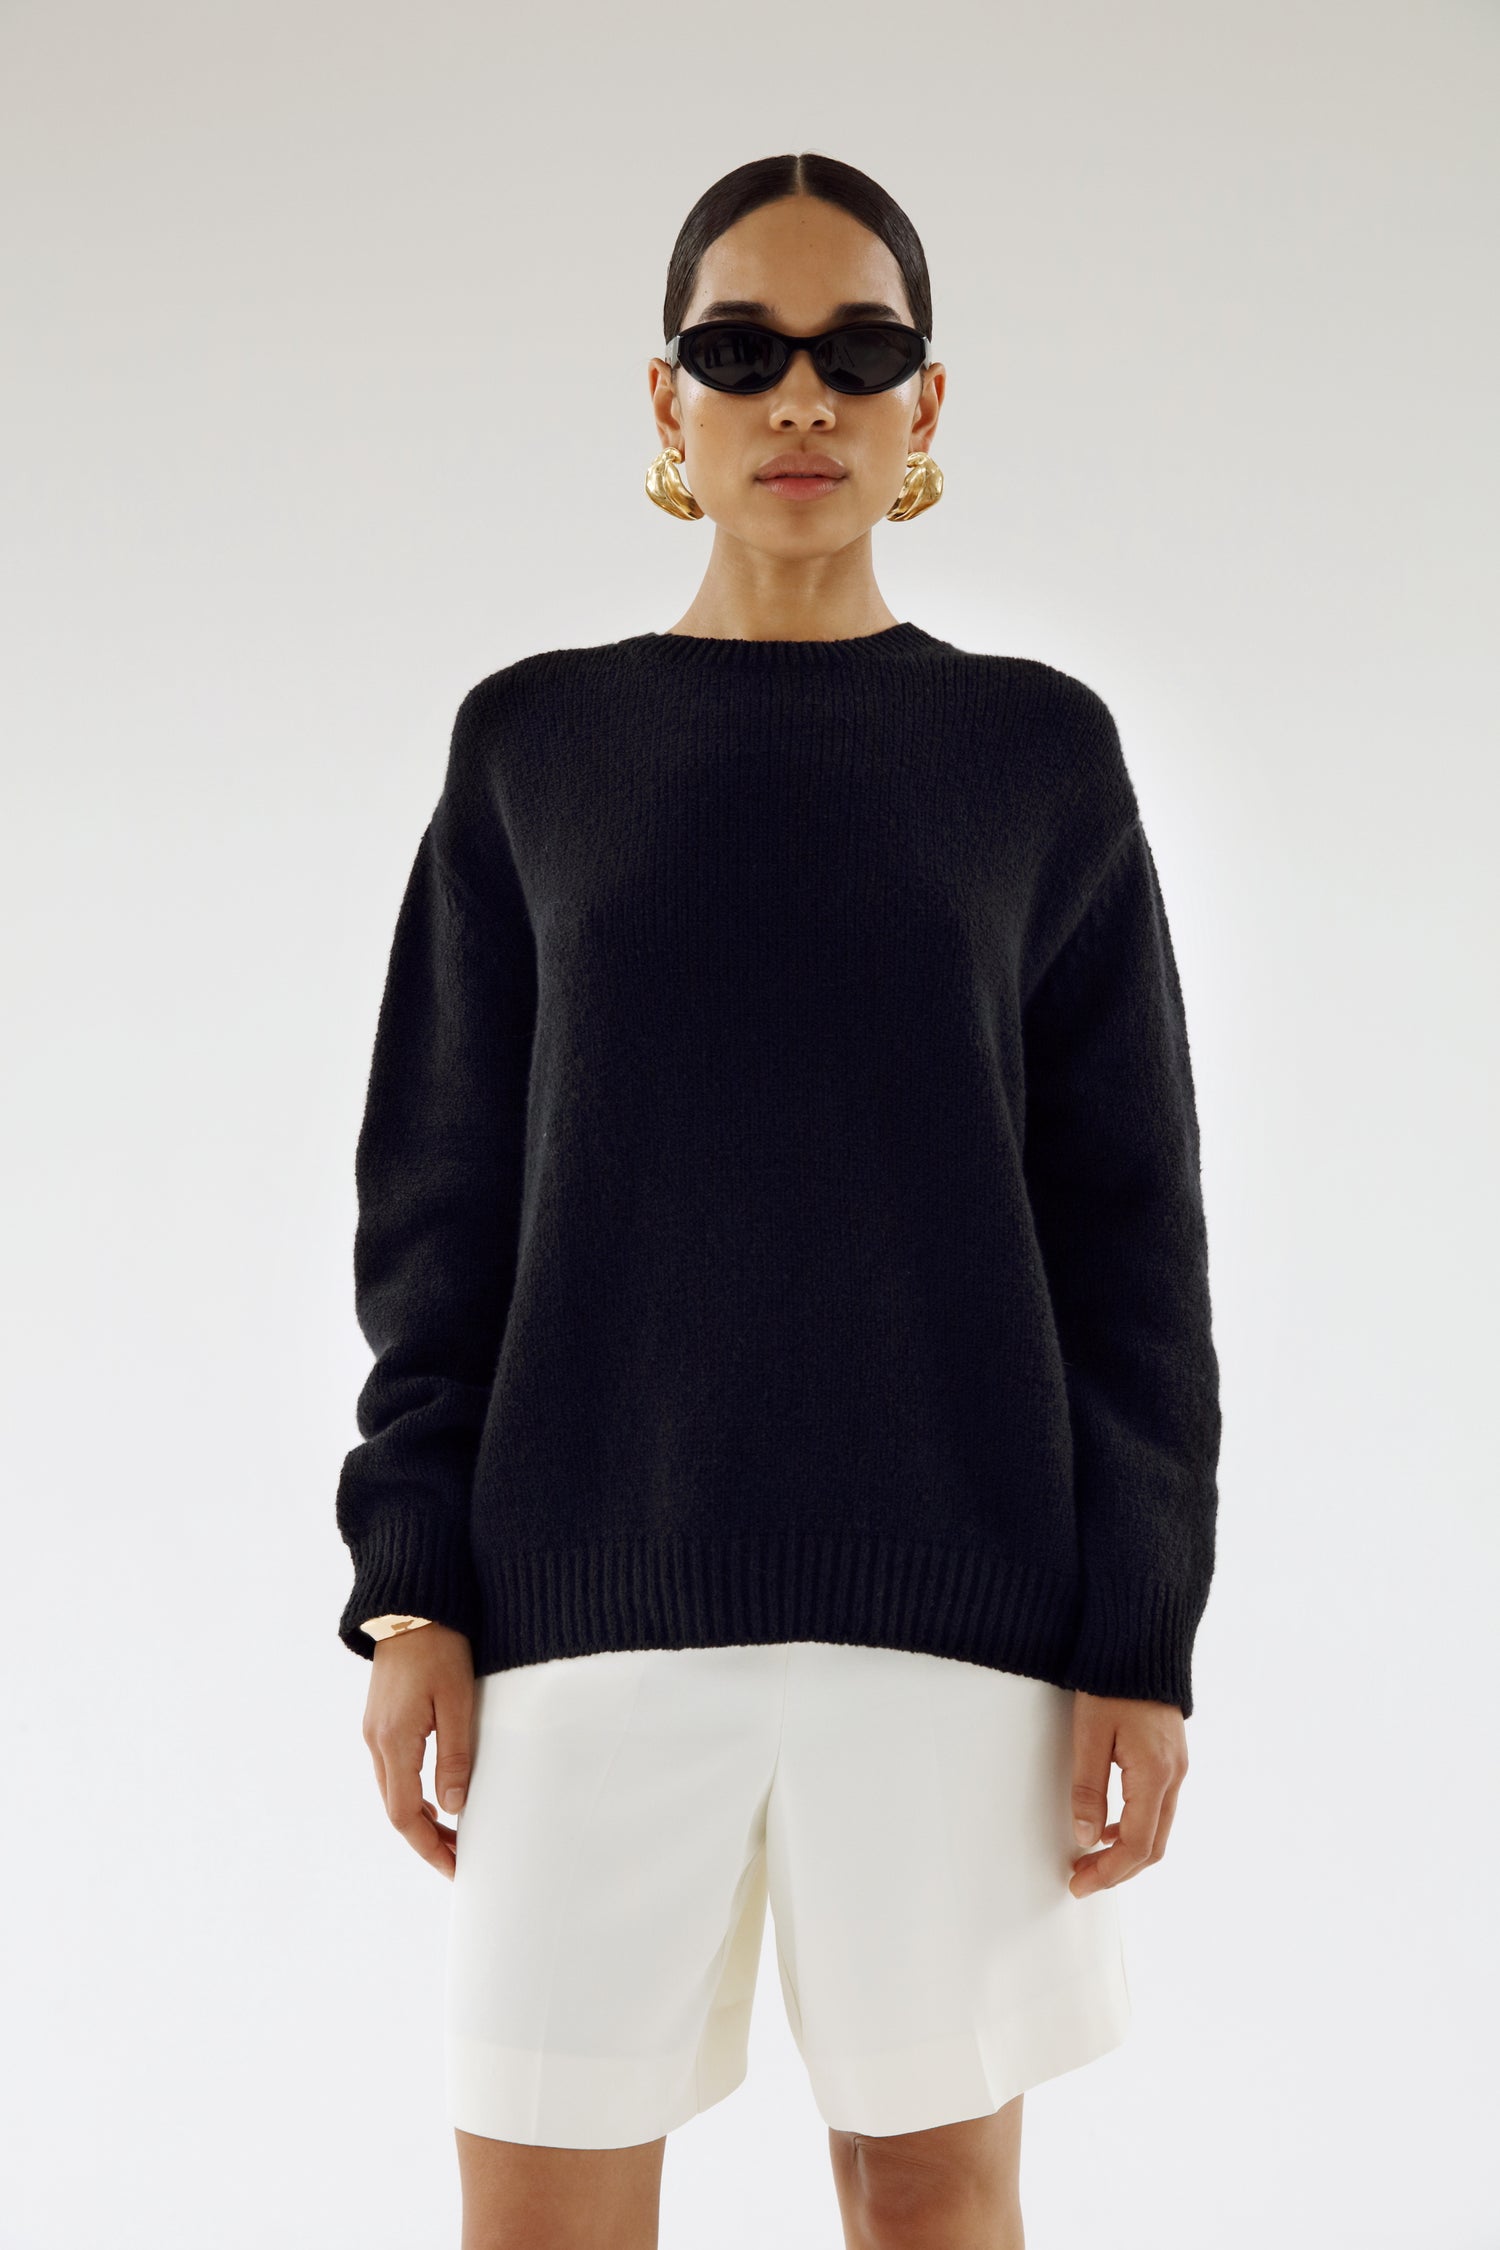 Flor Crewneck Sweater, black